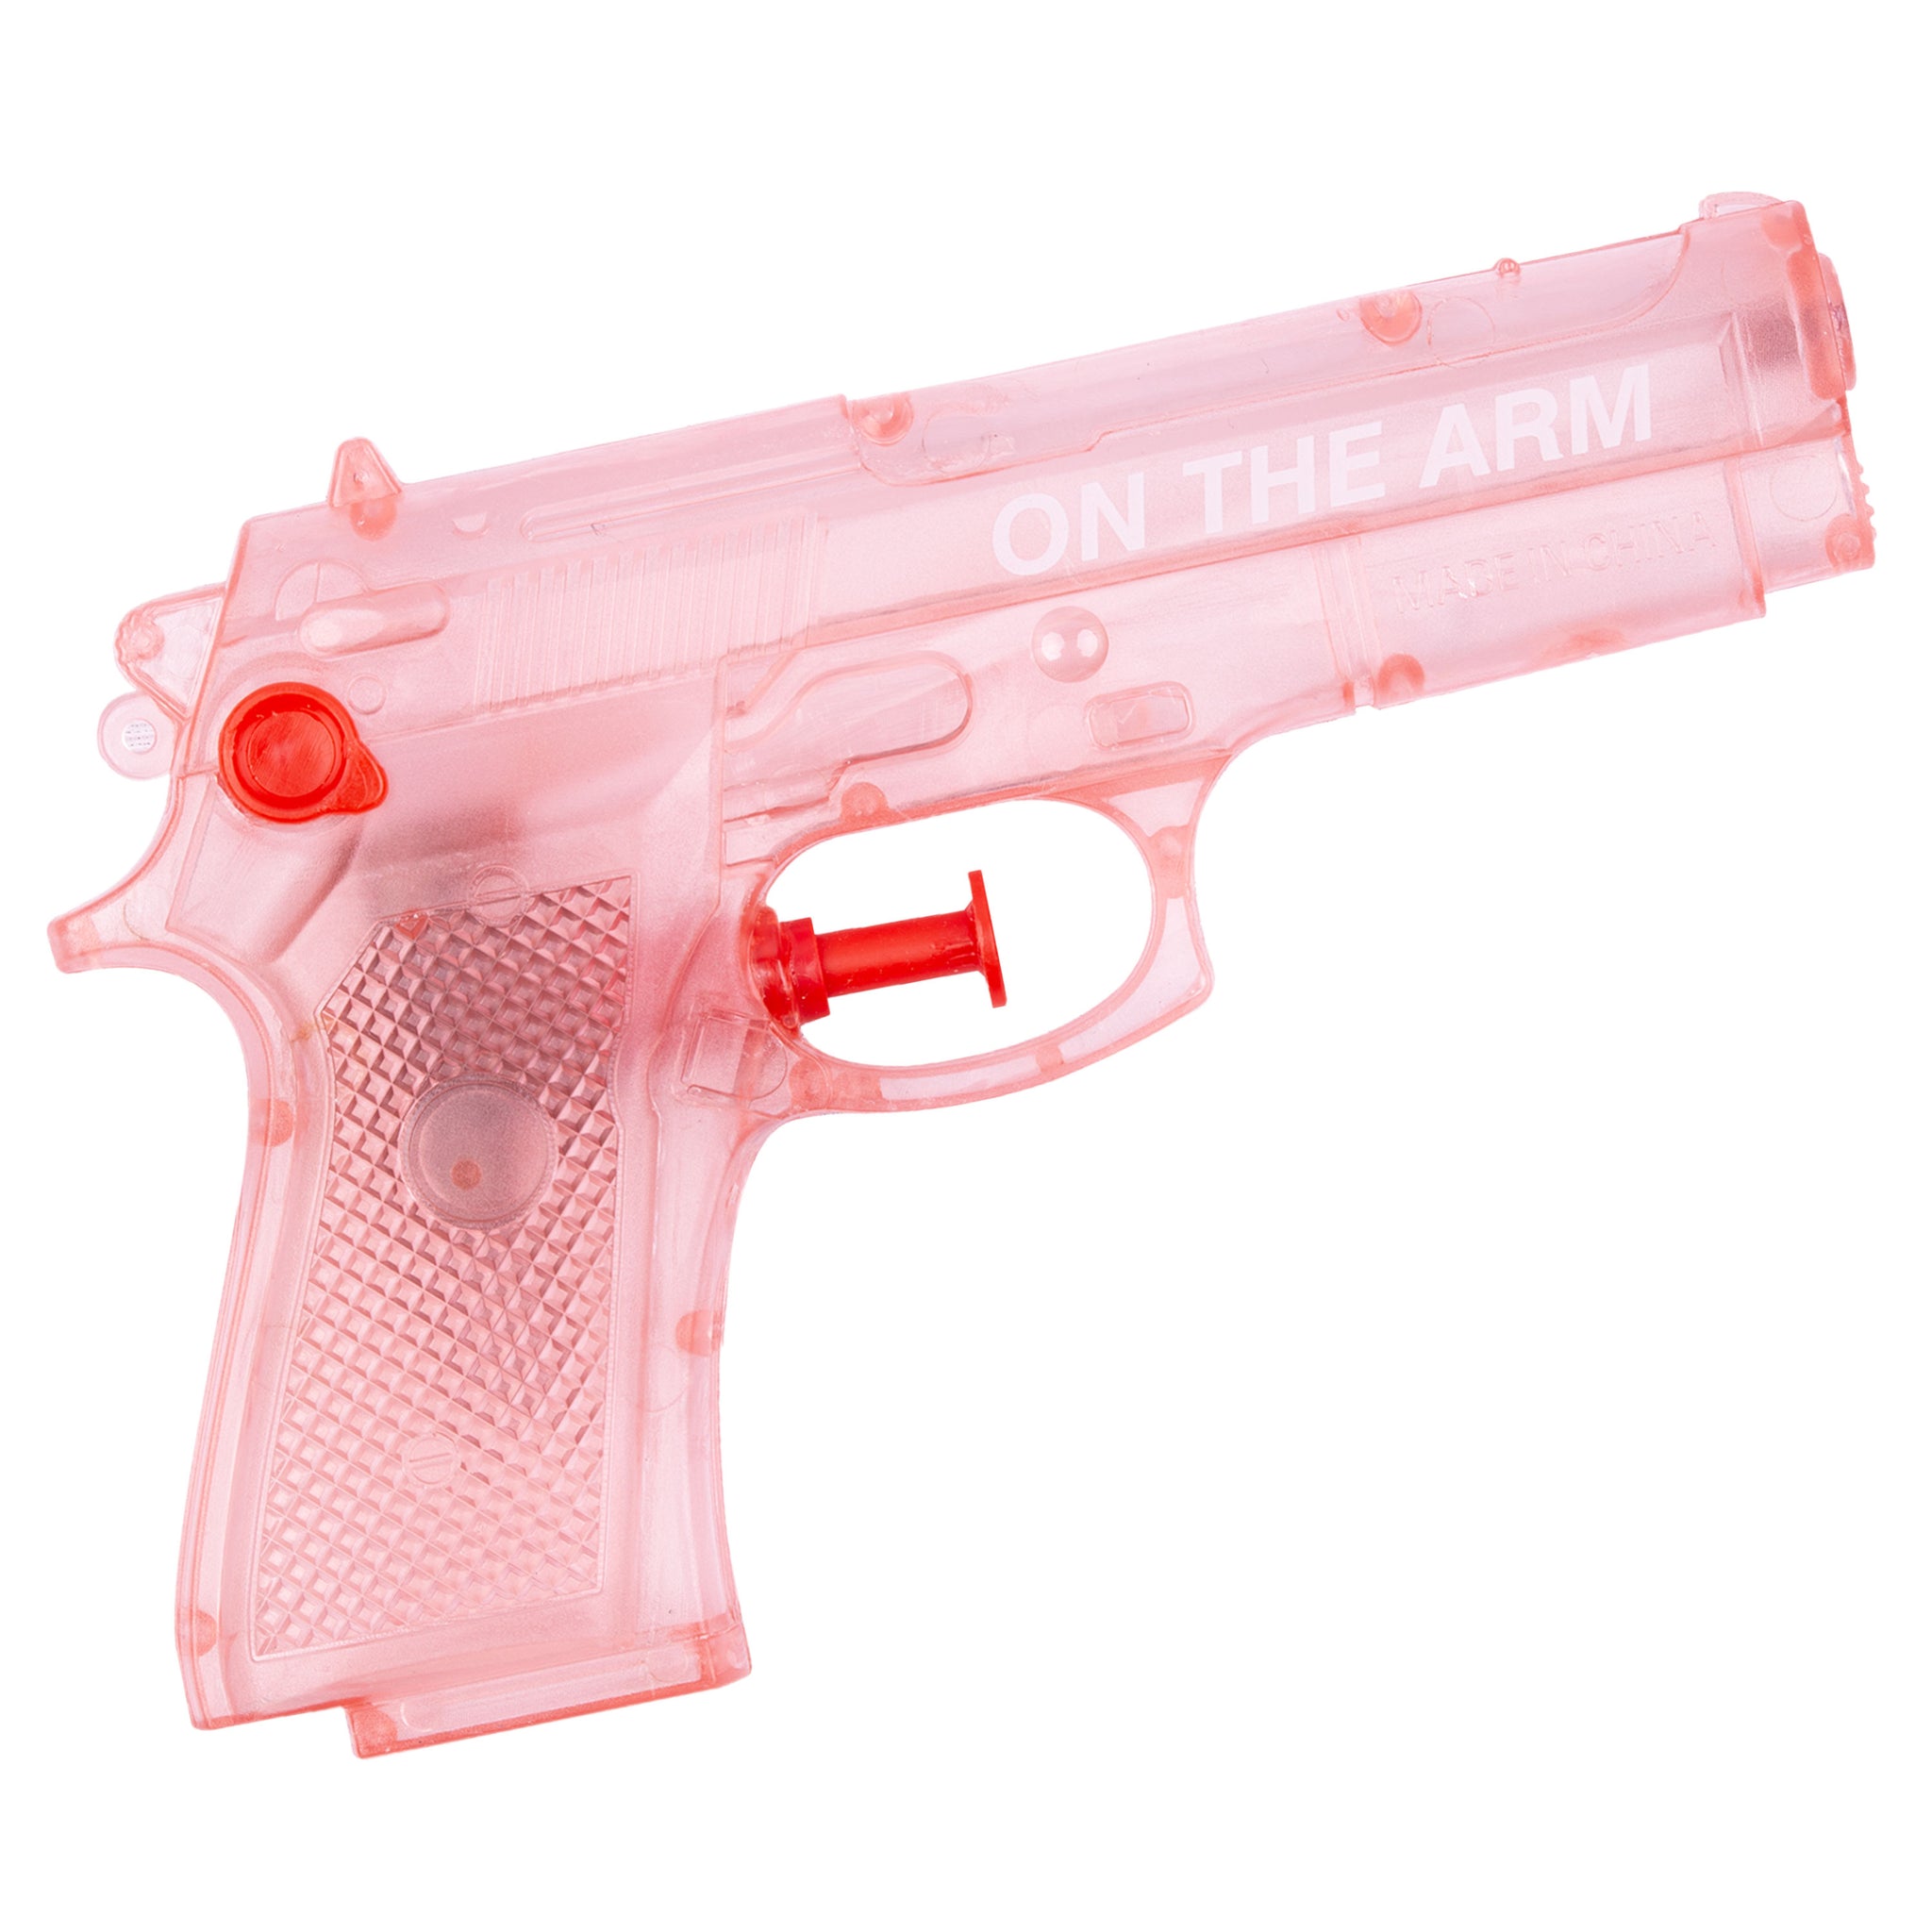 OTA Pink 𝒲𝑜𝓇𝓈𝓉 𝒮𝓊𝓂𝓂𝑒𝓇 𝐸𝓋𝑒𝓇 Water Gun